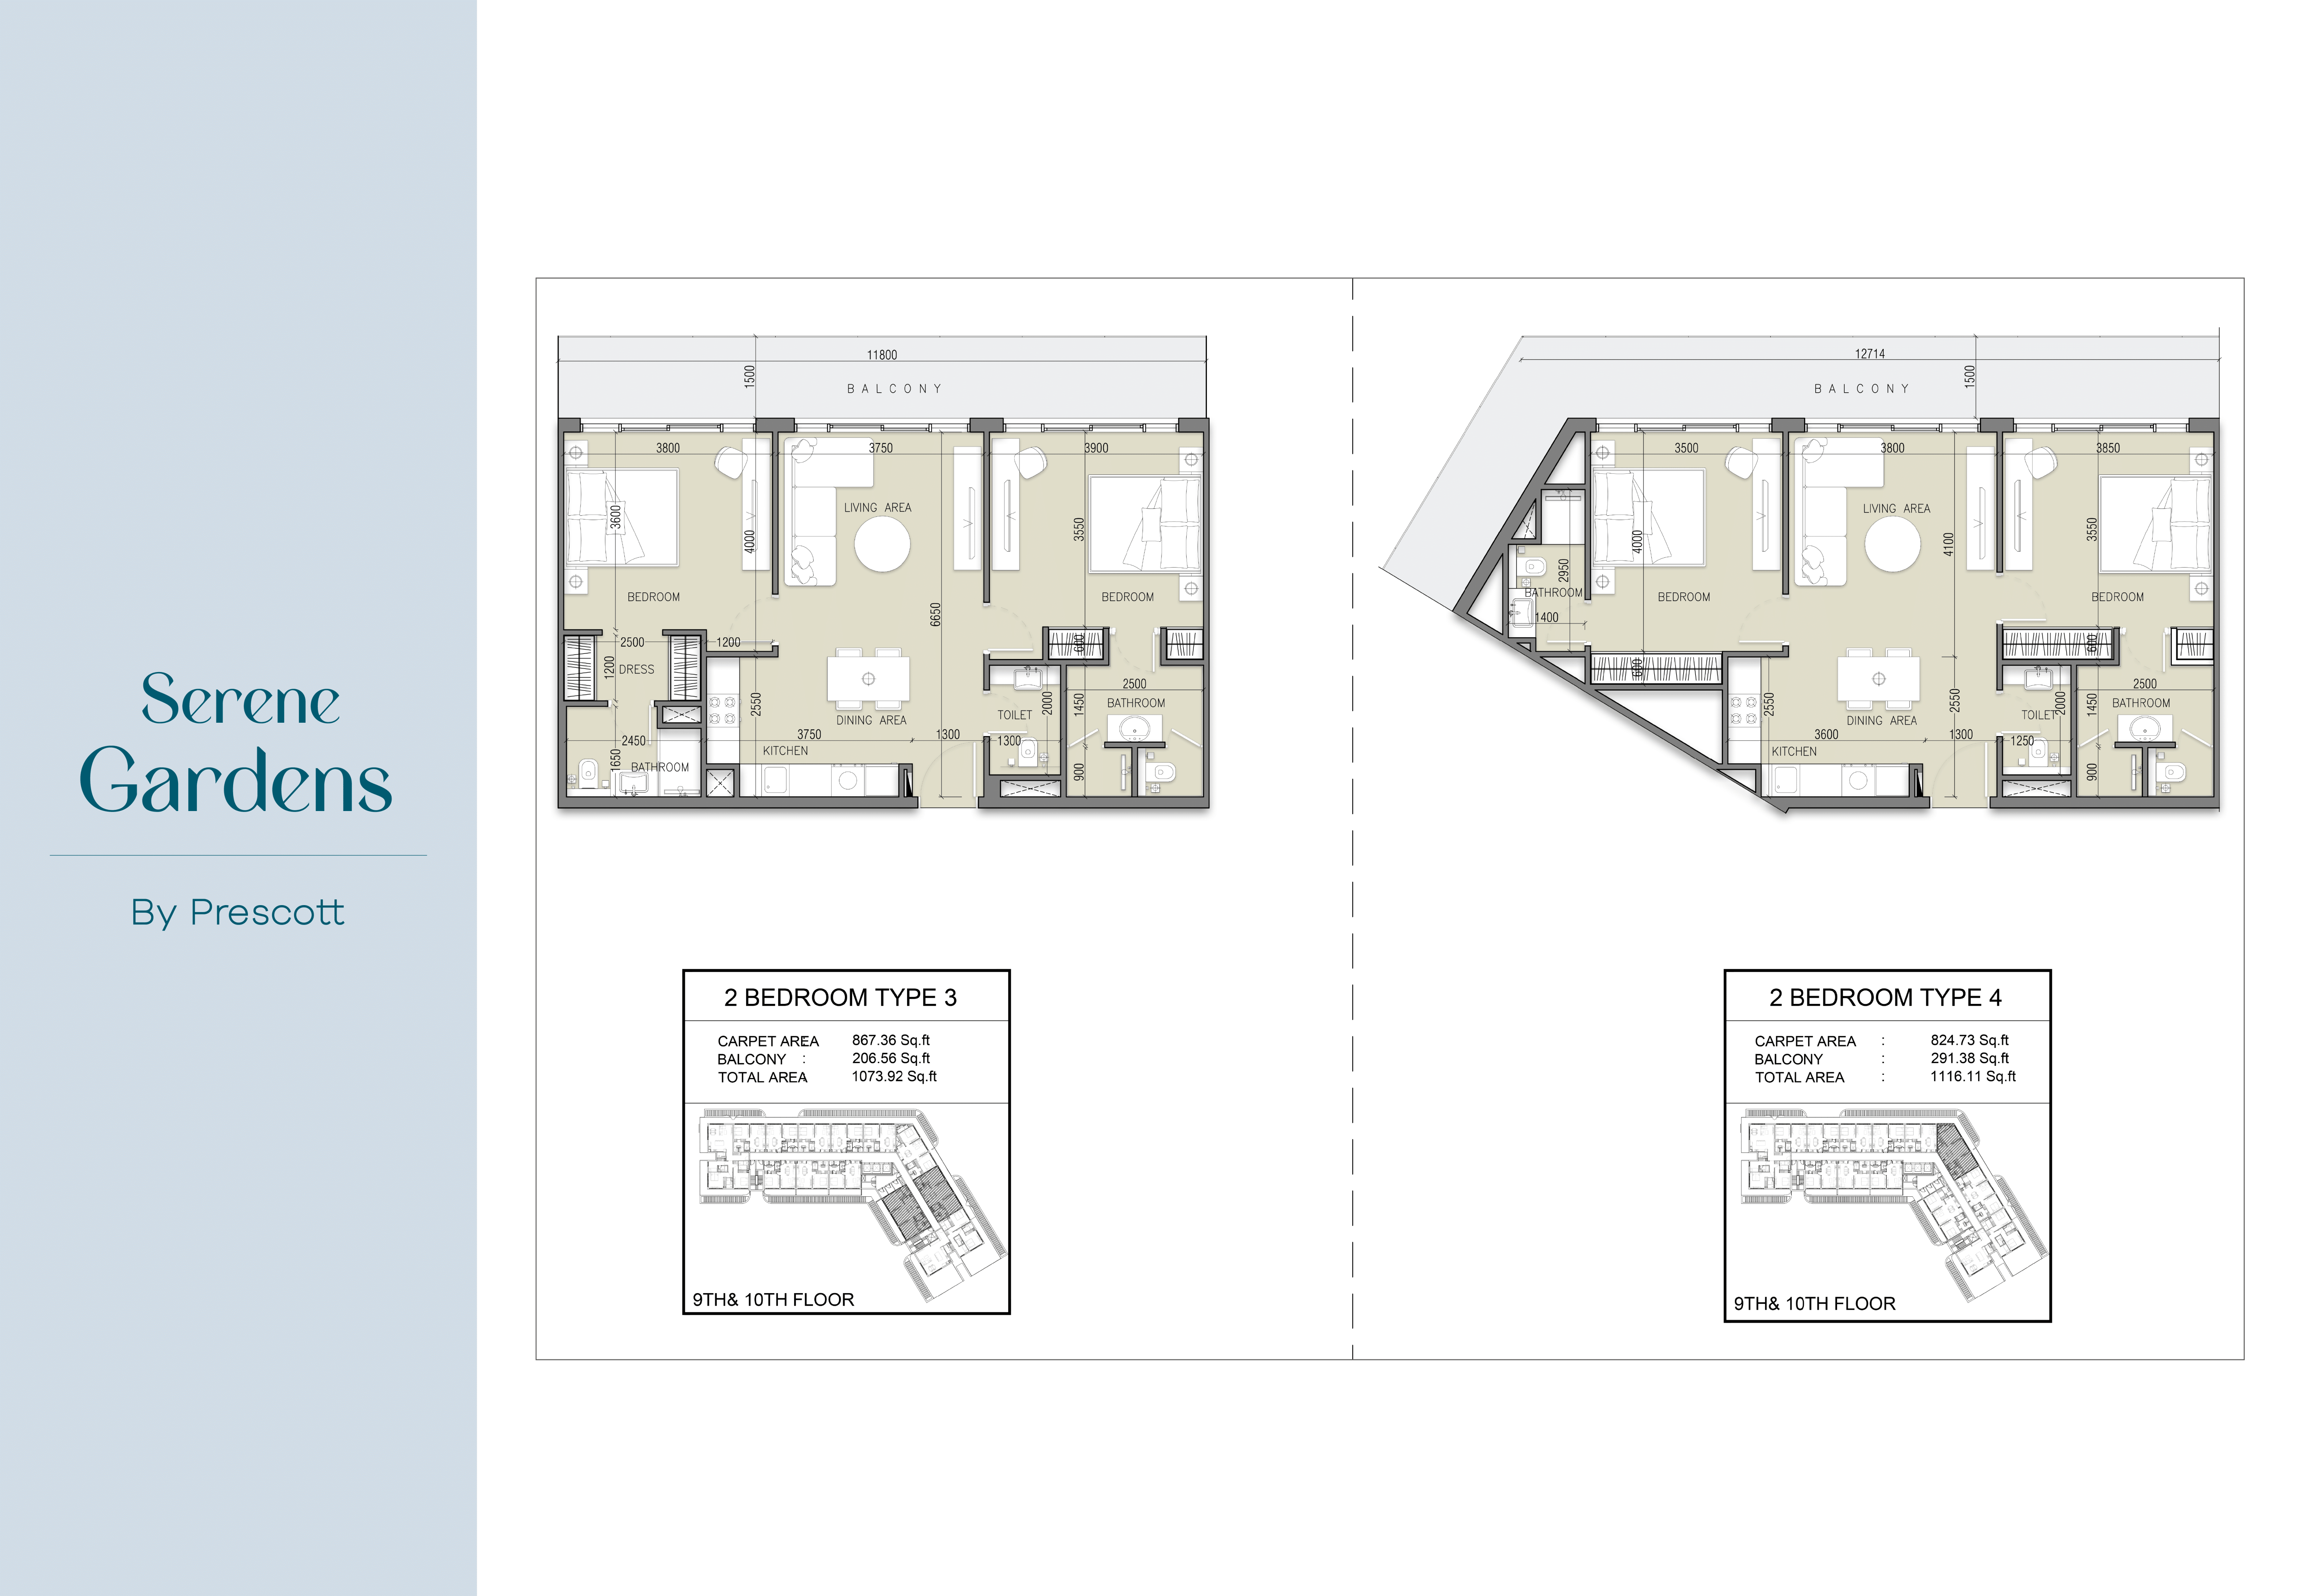 Appartement de luxe avec deux chambres à SERENE GARDENS (Unité 1010, Type 4)